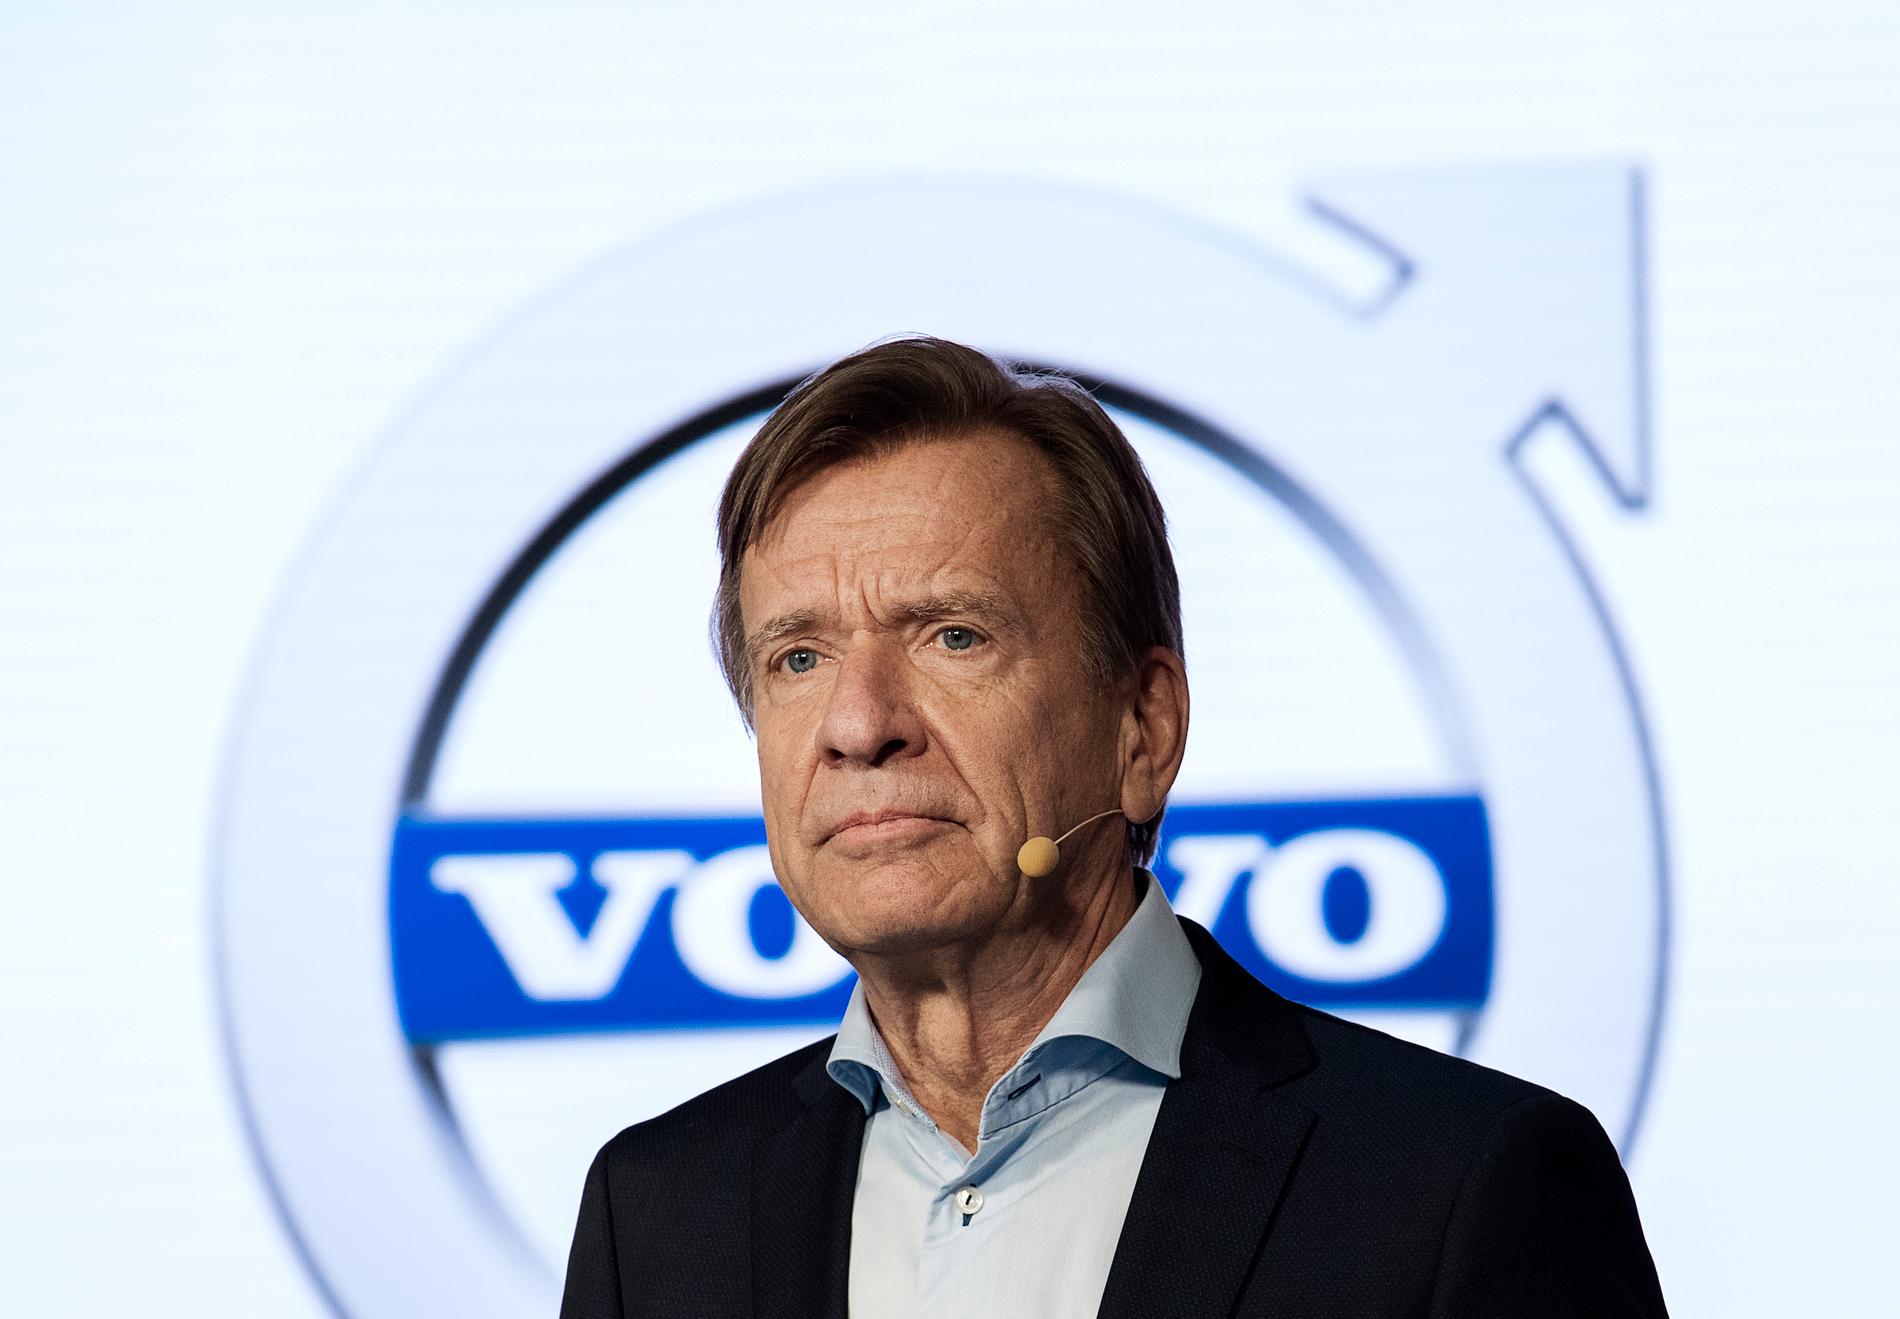 Bonusarna till vd och ledning på Geelyägda Volvo Cars höjdes med 20 procent i fjol till över 82 Mkr. Högst bonus fick Håkan Samuelsson, vd för Sverige Volvo Cars, med 36 miljoner. Sammanlagt fick han en lön på nästan 50 miljoner kronor 2020.